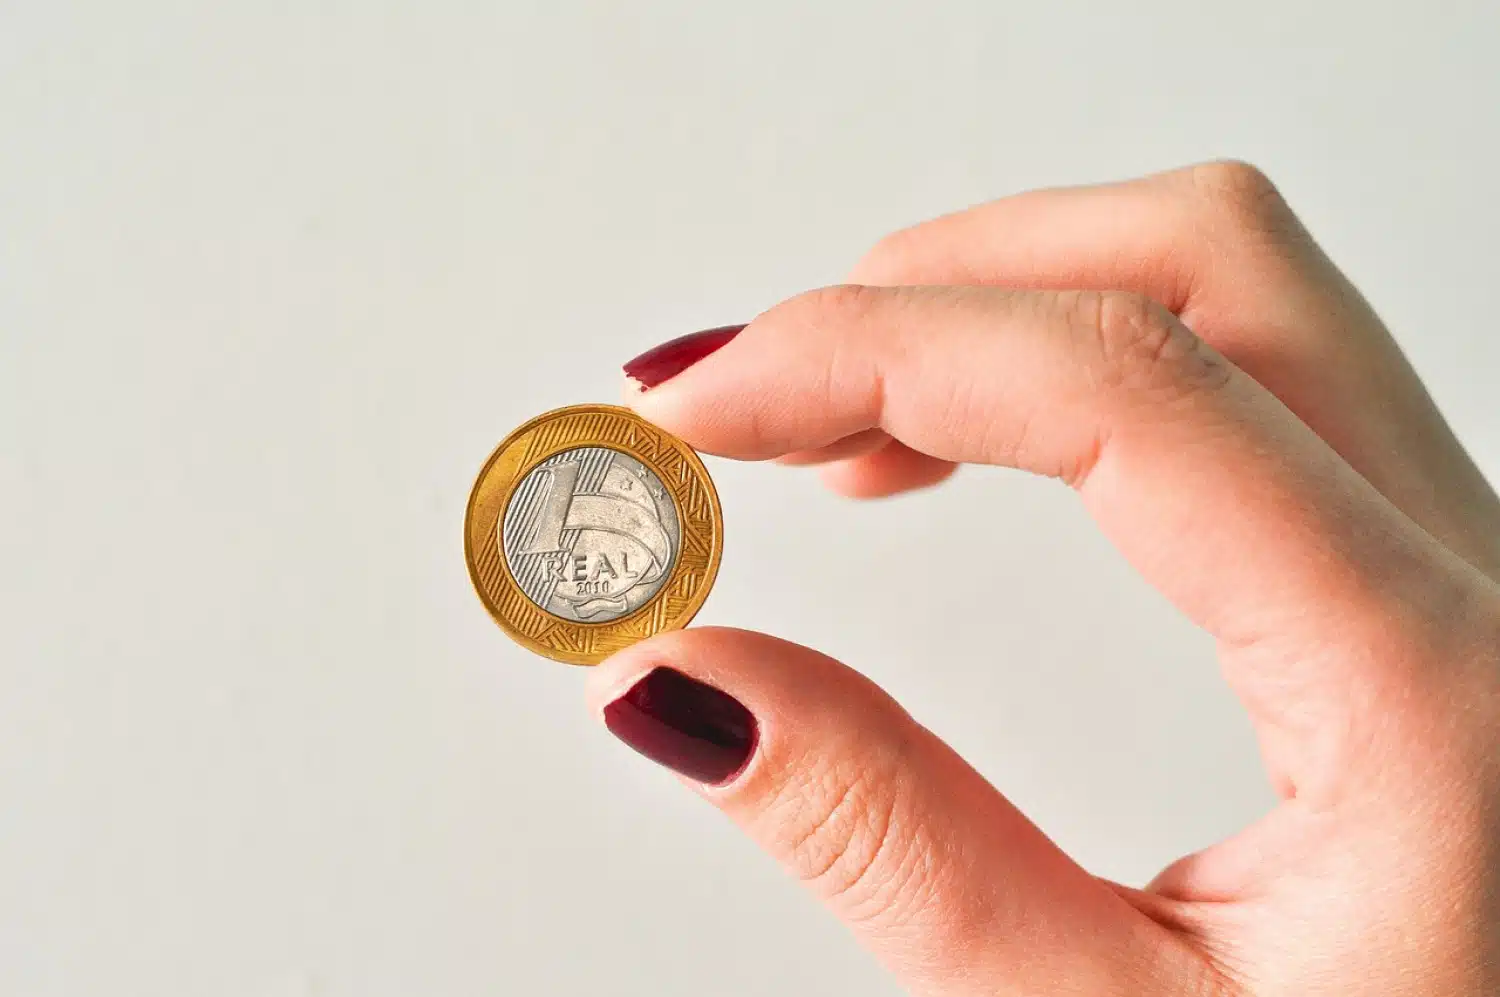  Trésors cachés : comment identifier et vendre des pièces de 1 euro rares et précieuses